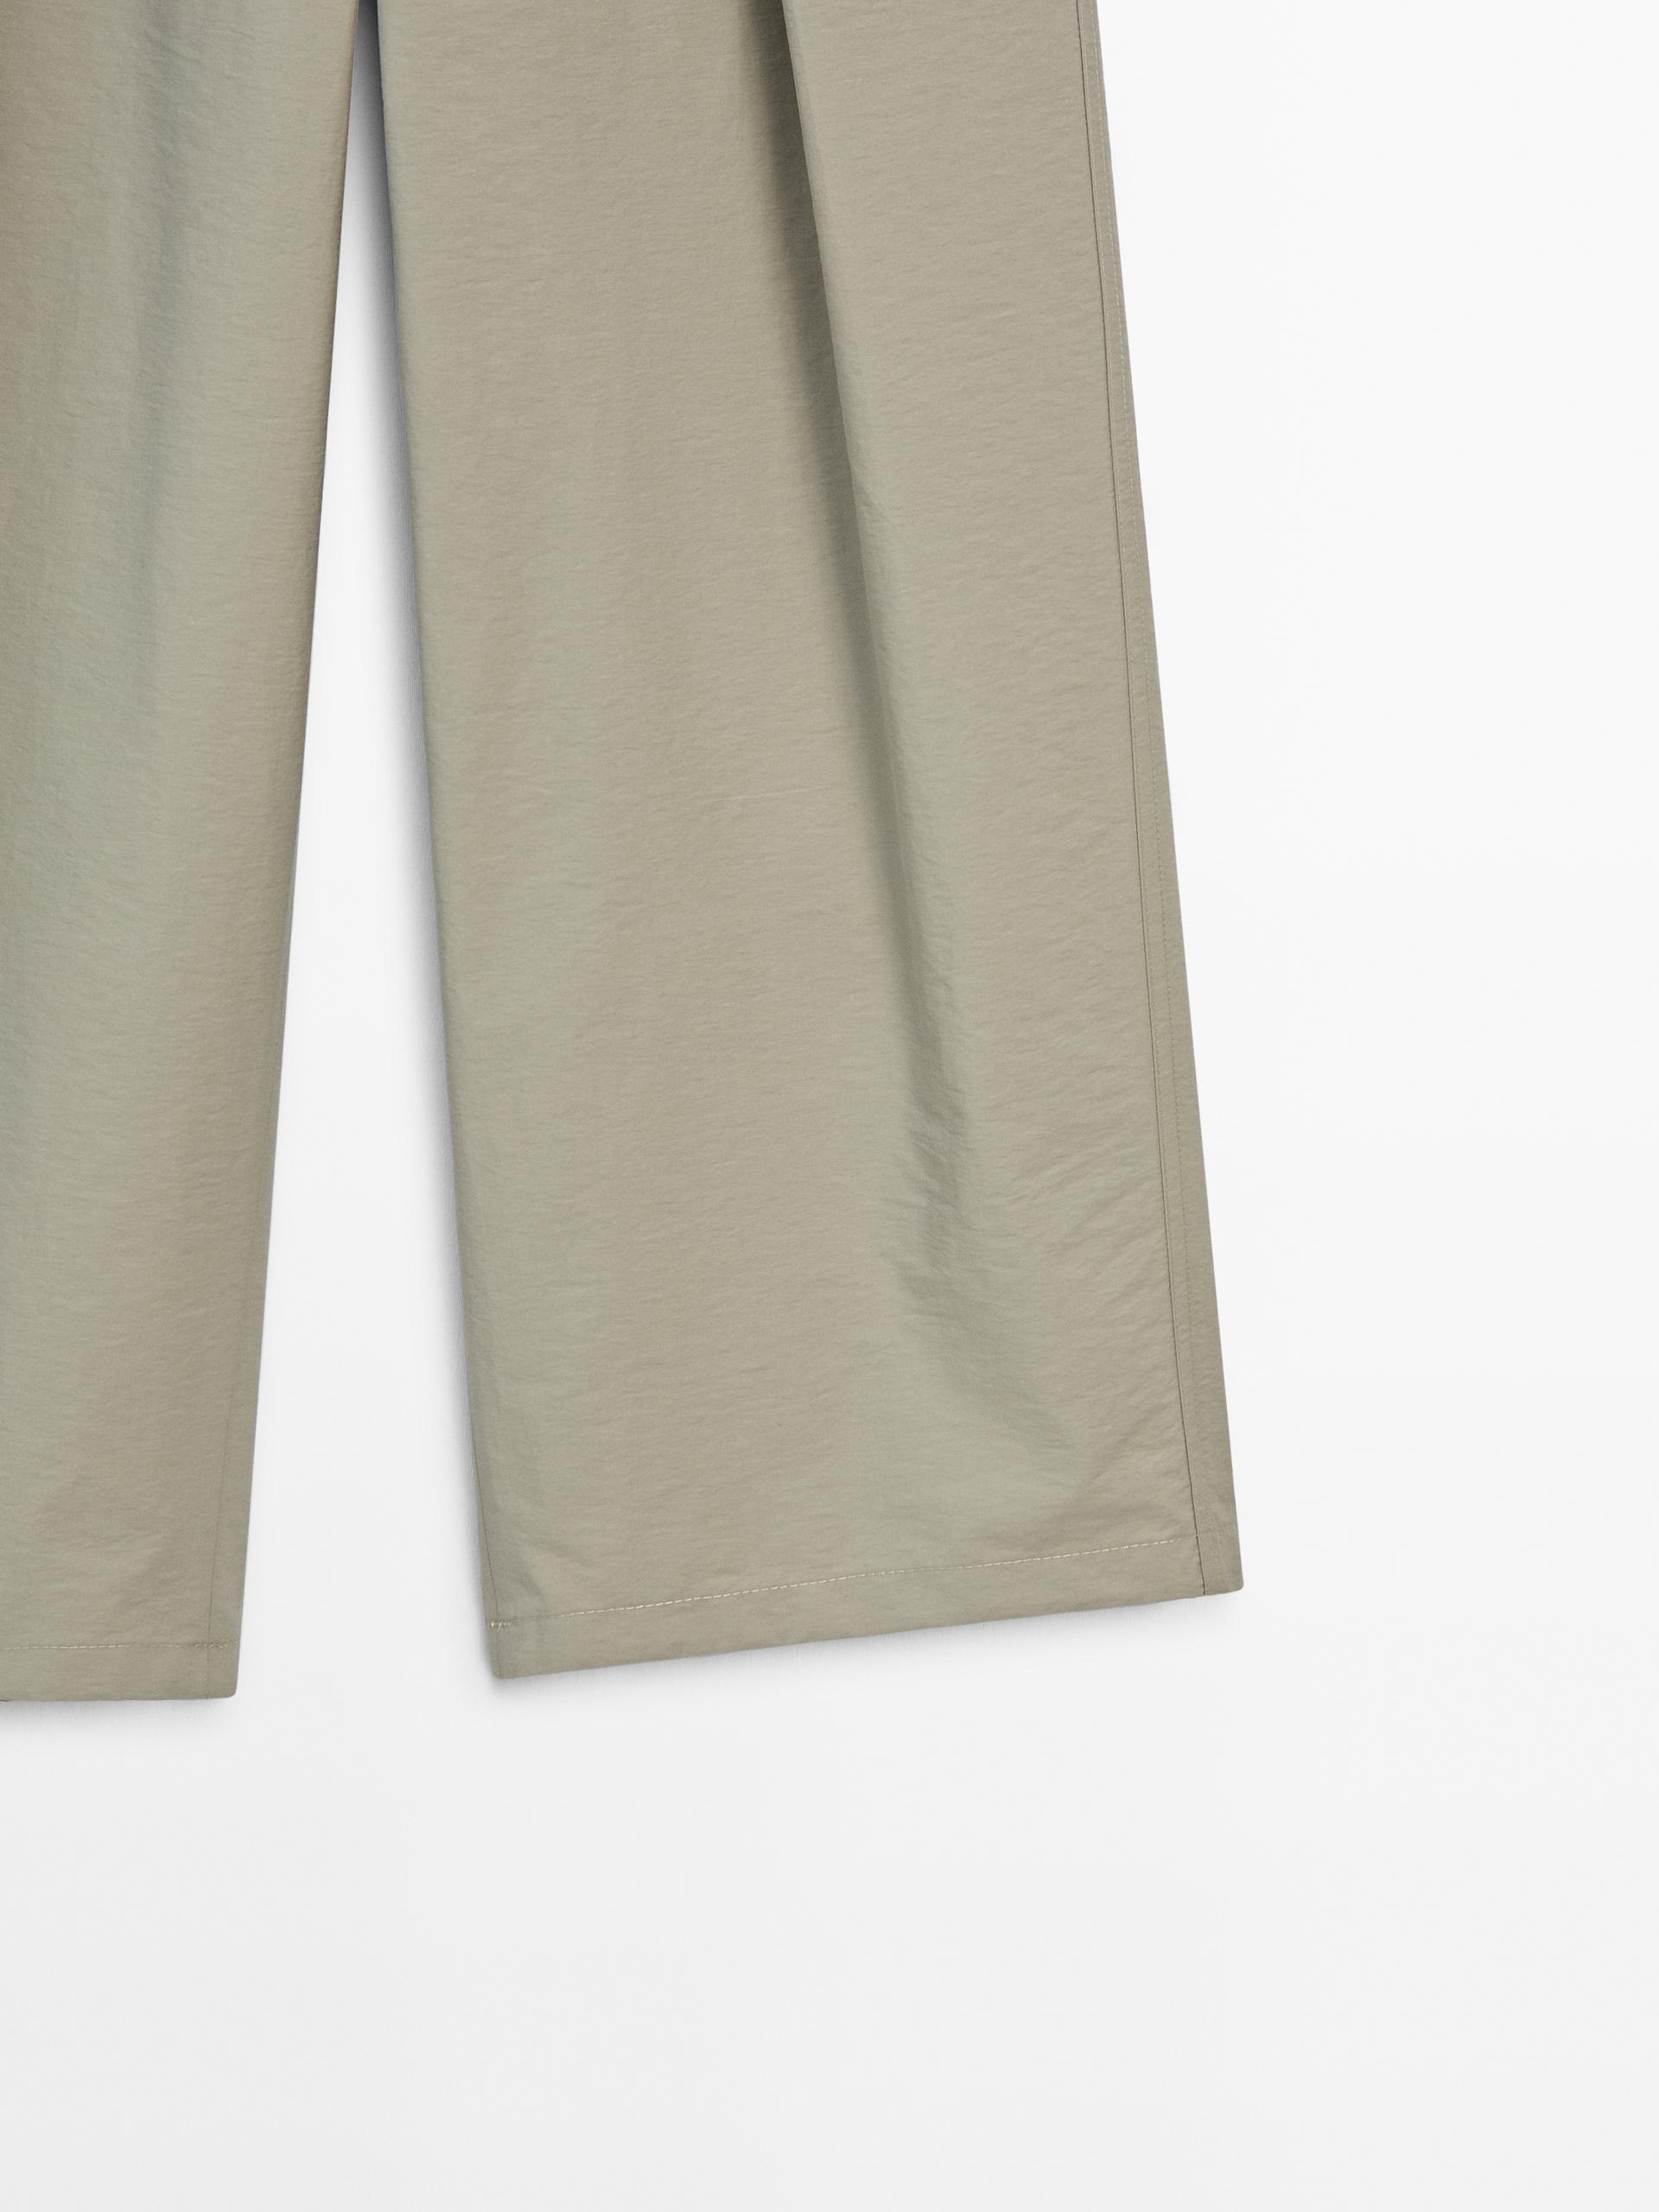 Pantalón ancho cintura elástica conjunto - Khaki claro